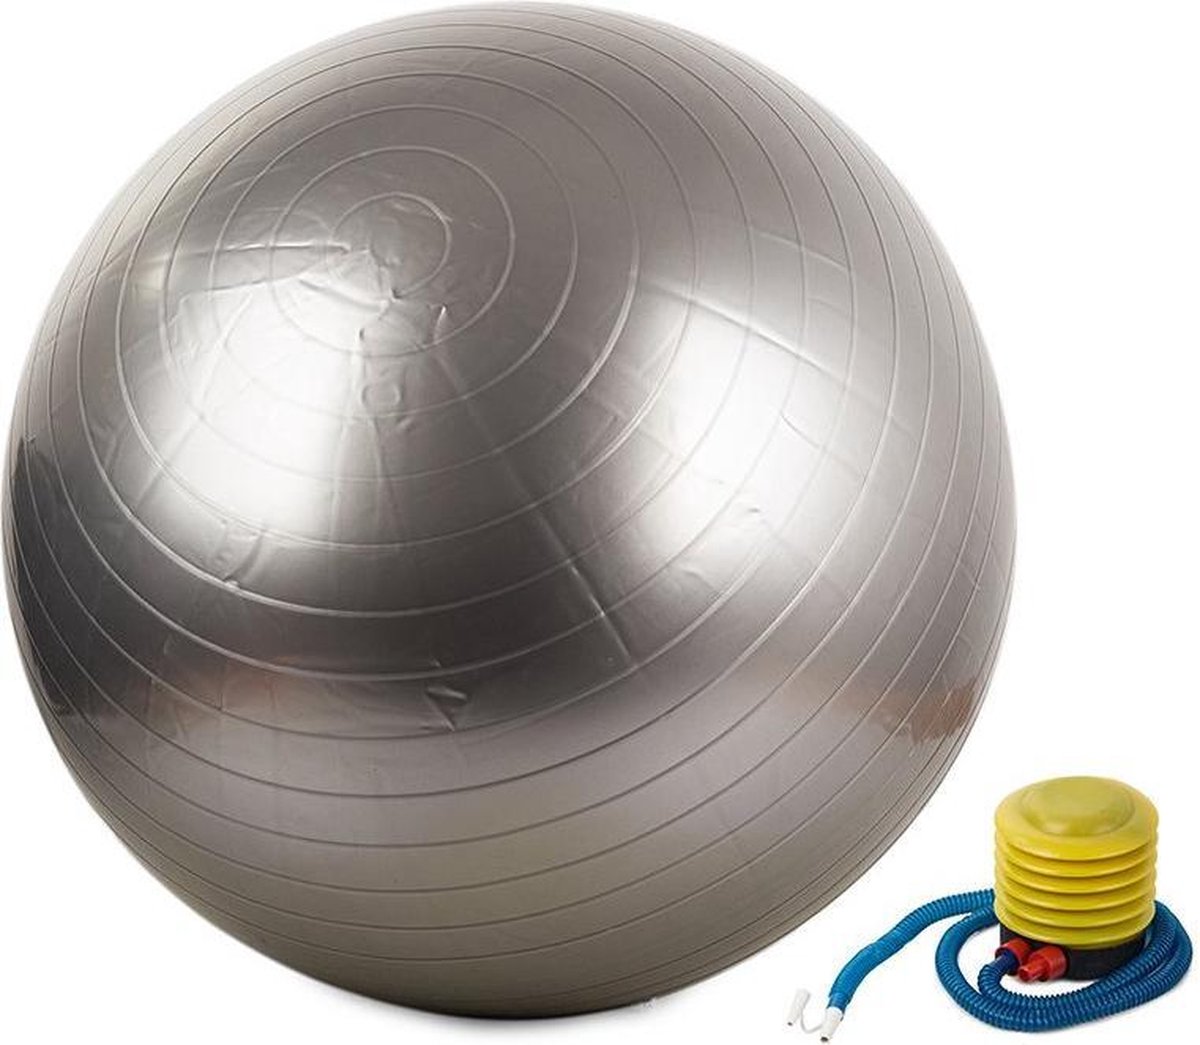 Gymnastiekbal (grijs) - Gymbal - Yoga Bal - Fitness Bal - Pilates - Fitness - 65cm inclusief Pomp! Versterking spieren/conditie/Mobiliteit!